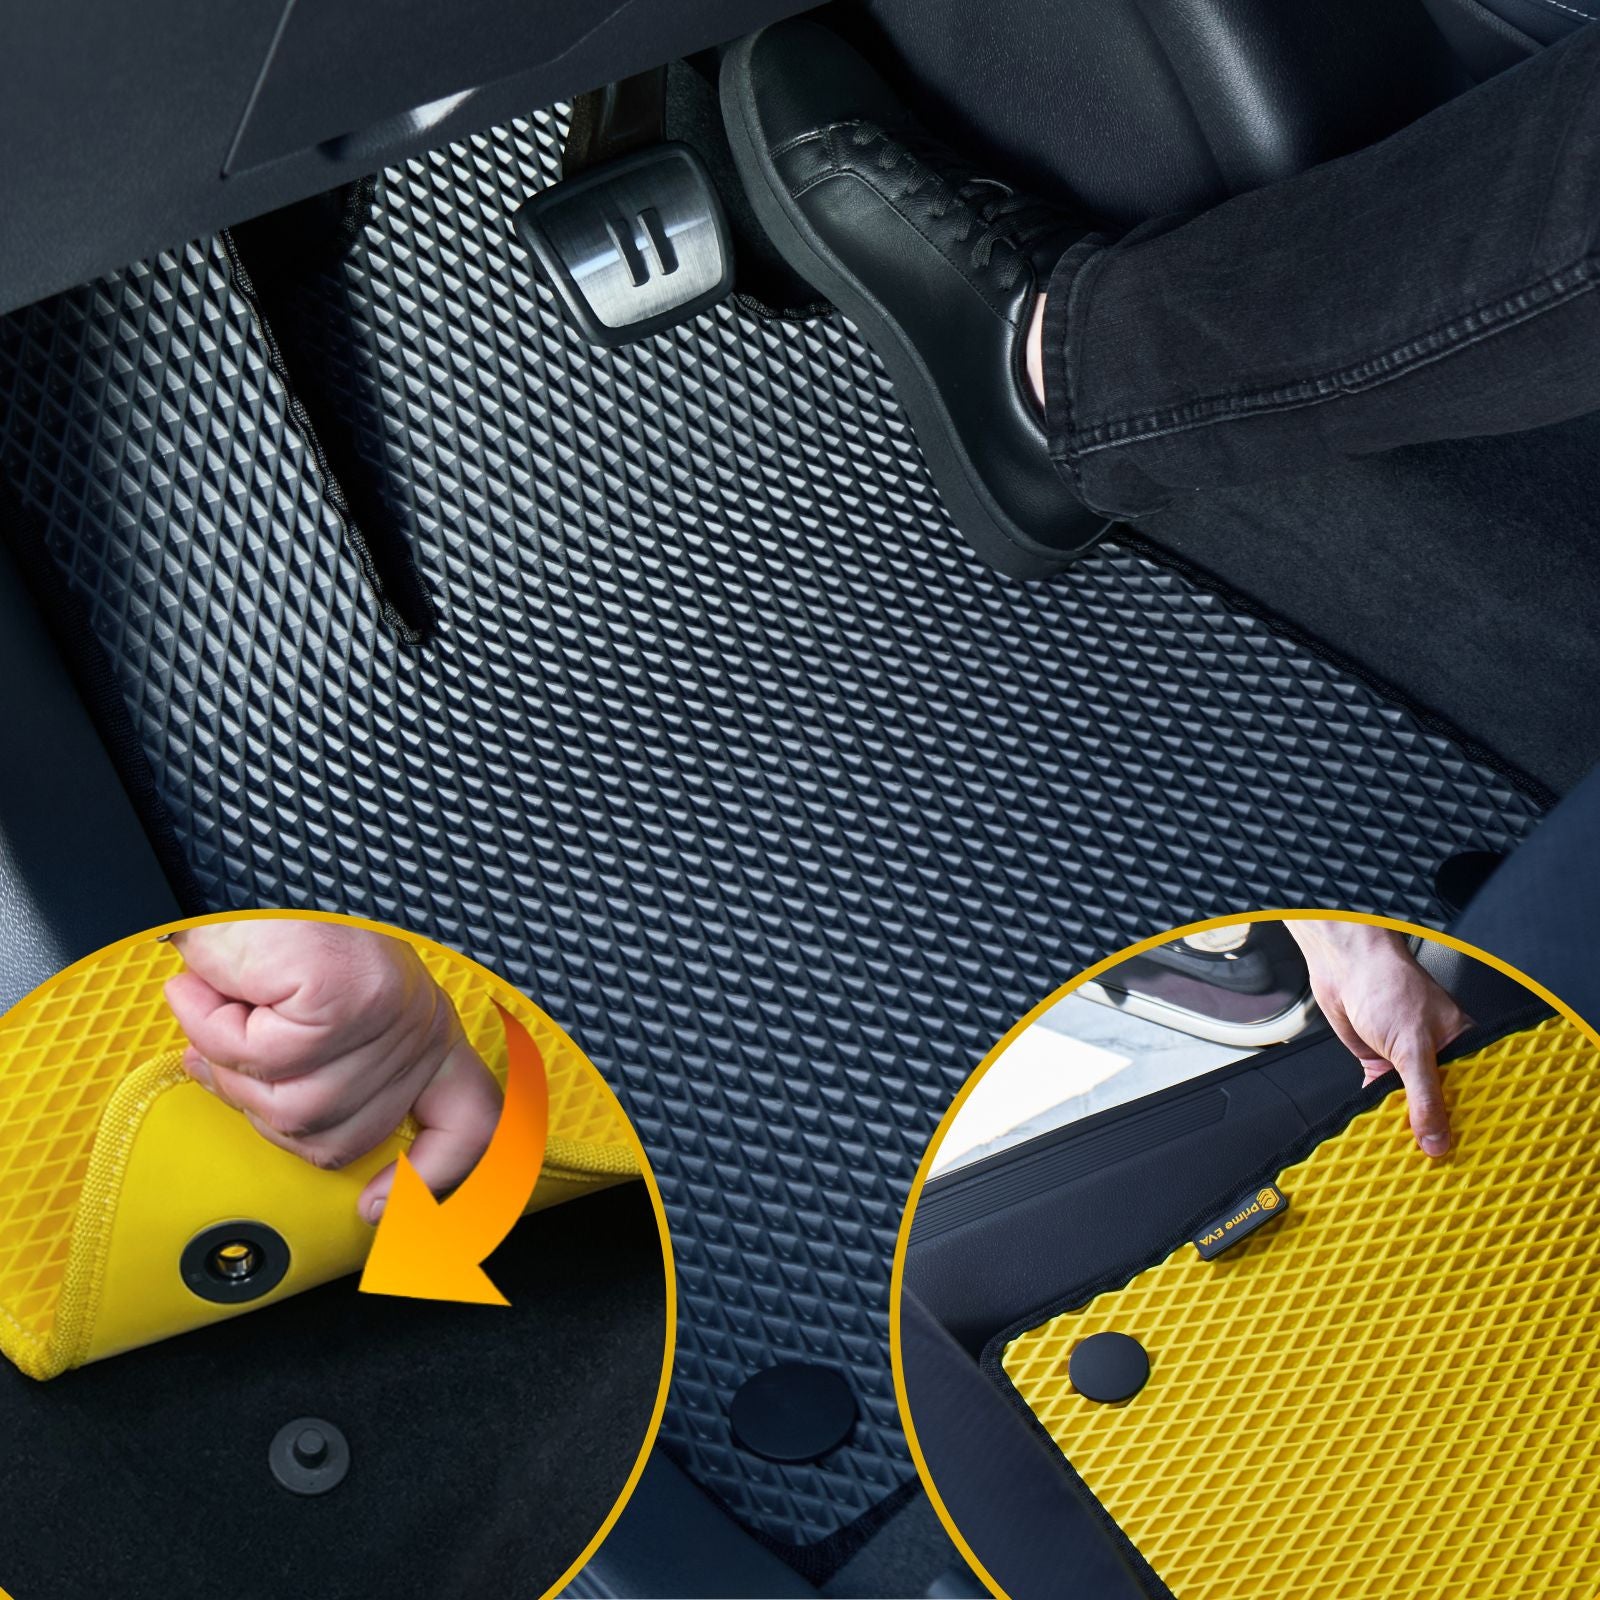 Einbau einer langlebigen EVA-Autofußmatte mit sicherem Halt.